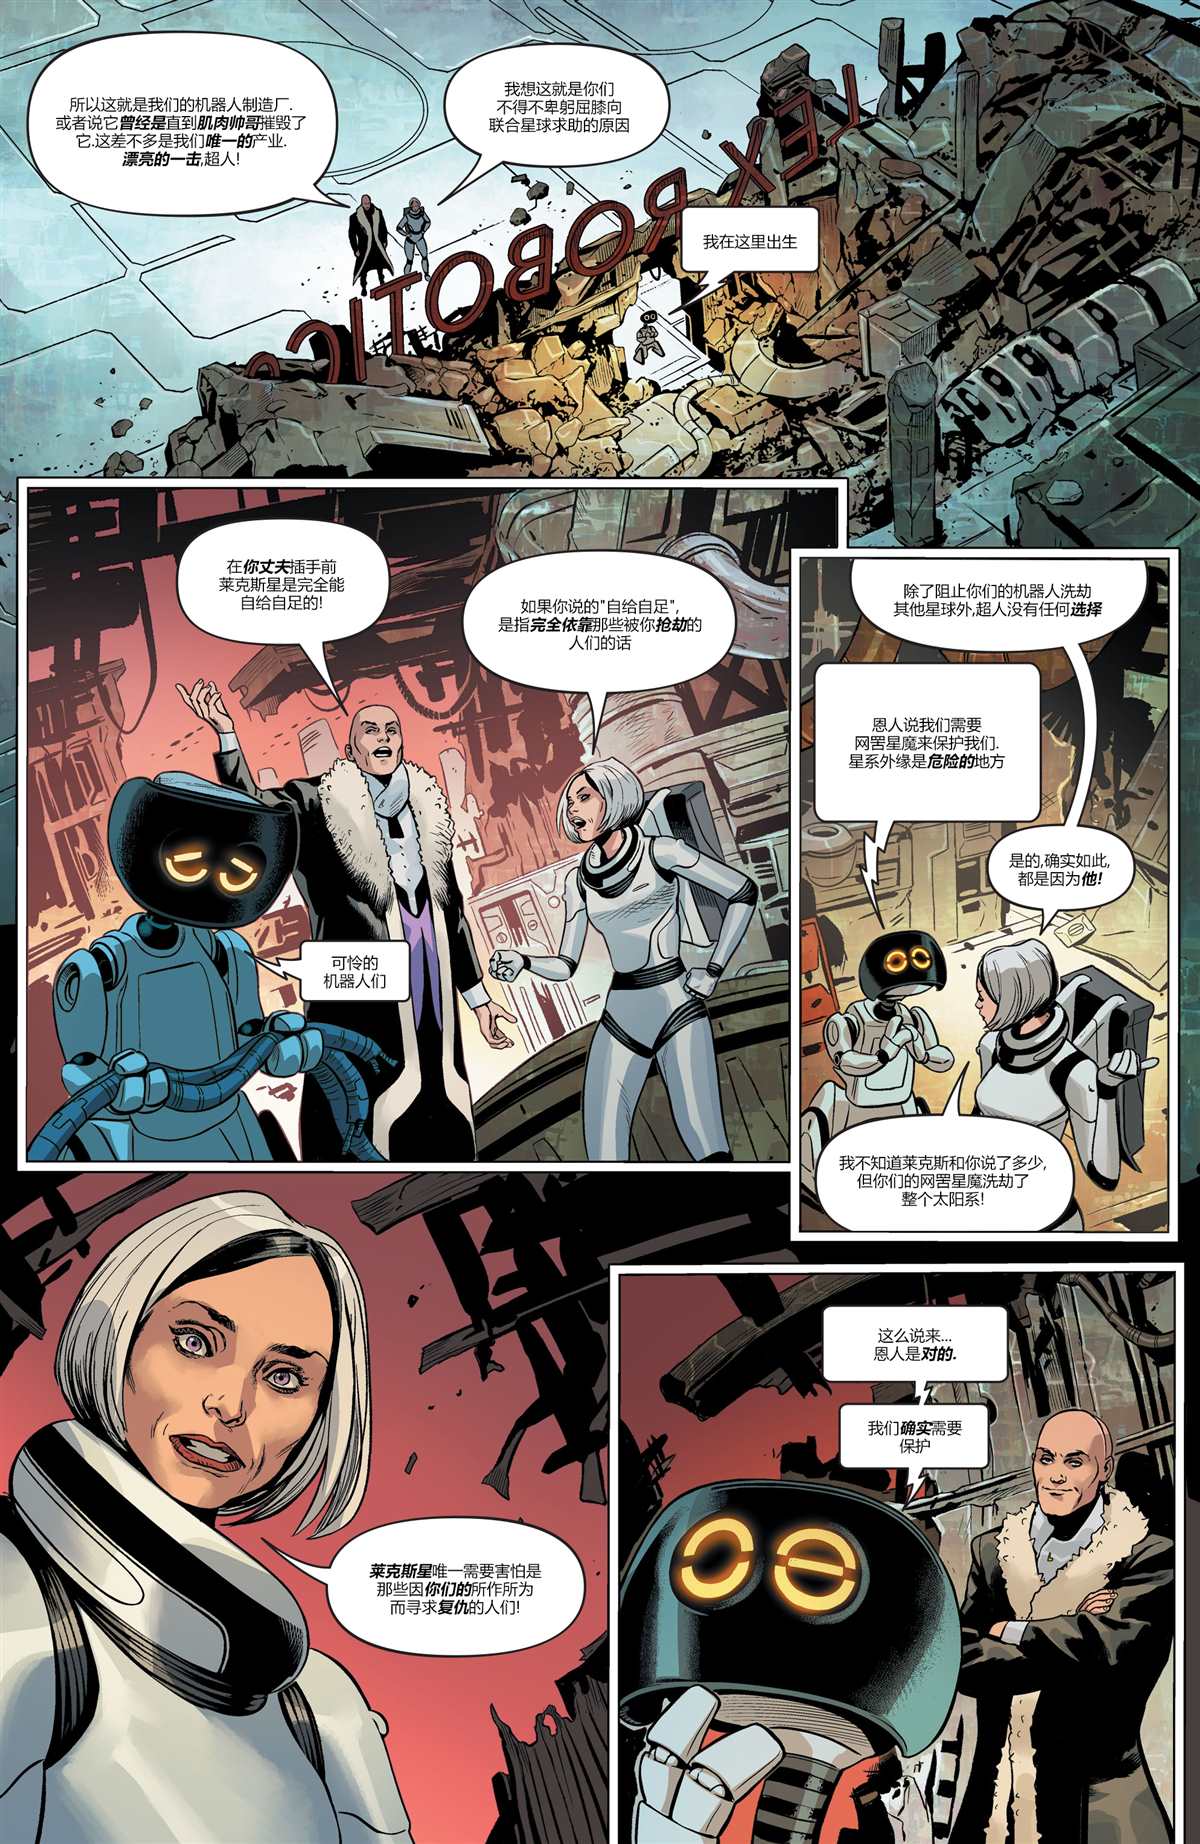 DC未來態 - 未來態-超人大戰霸王萊克斯#2 - 1